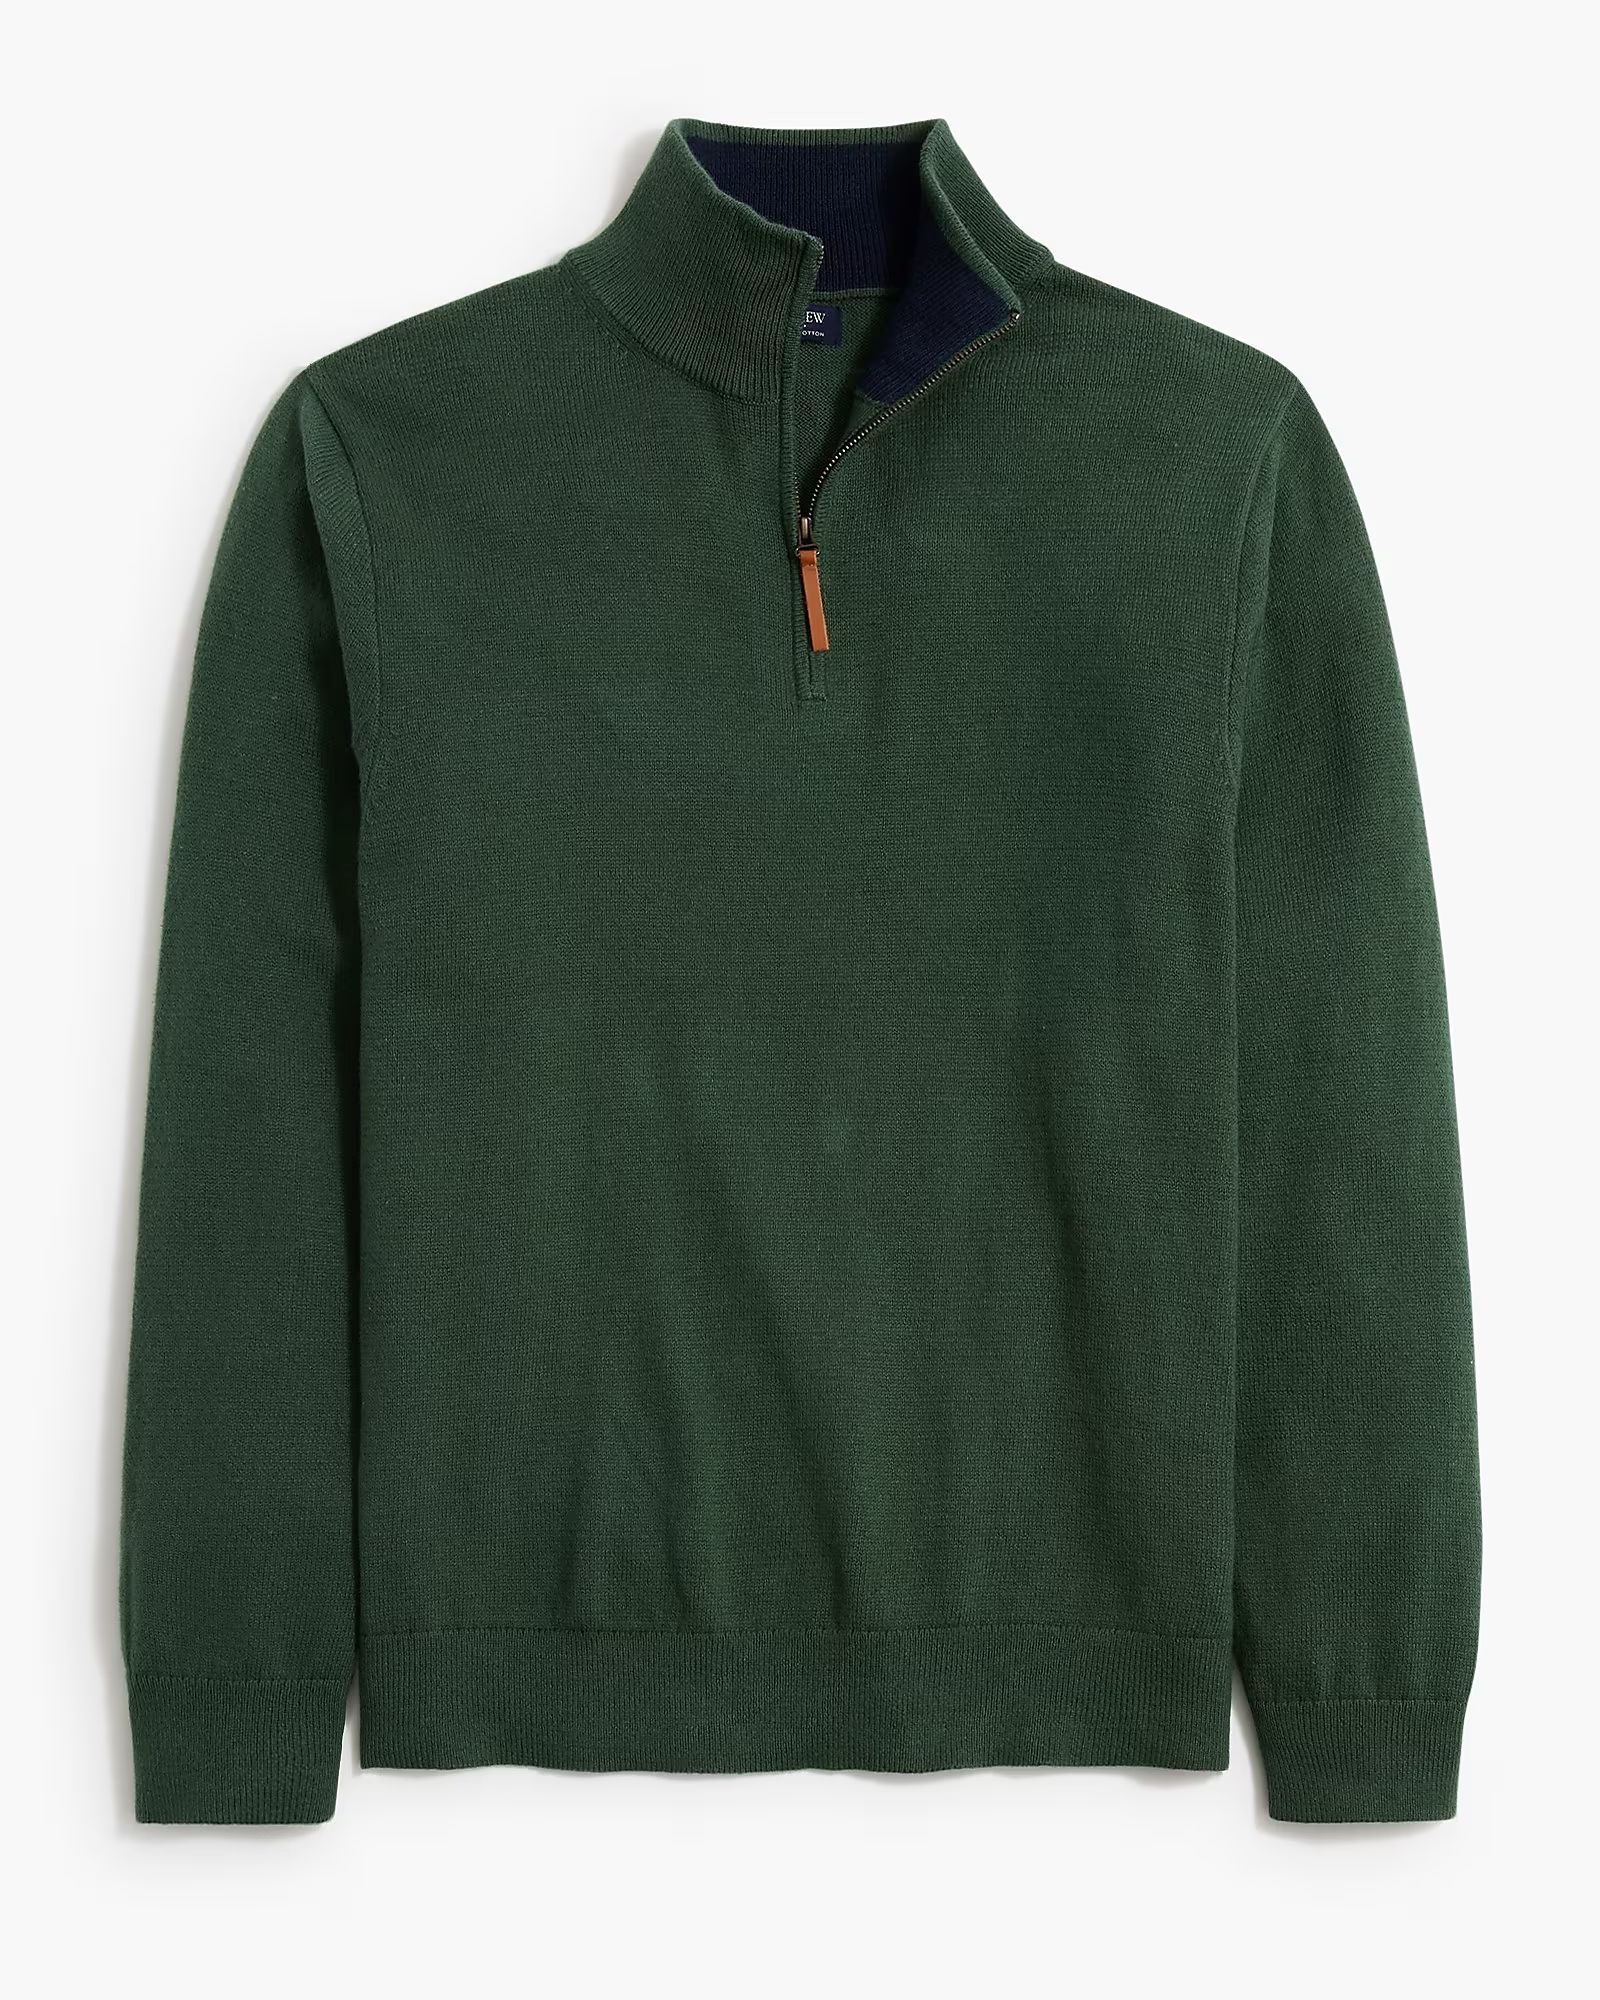 Cotton half-zip sweater | J.Crew Factory